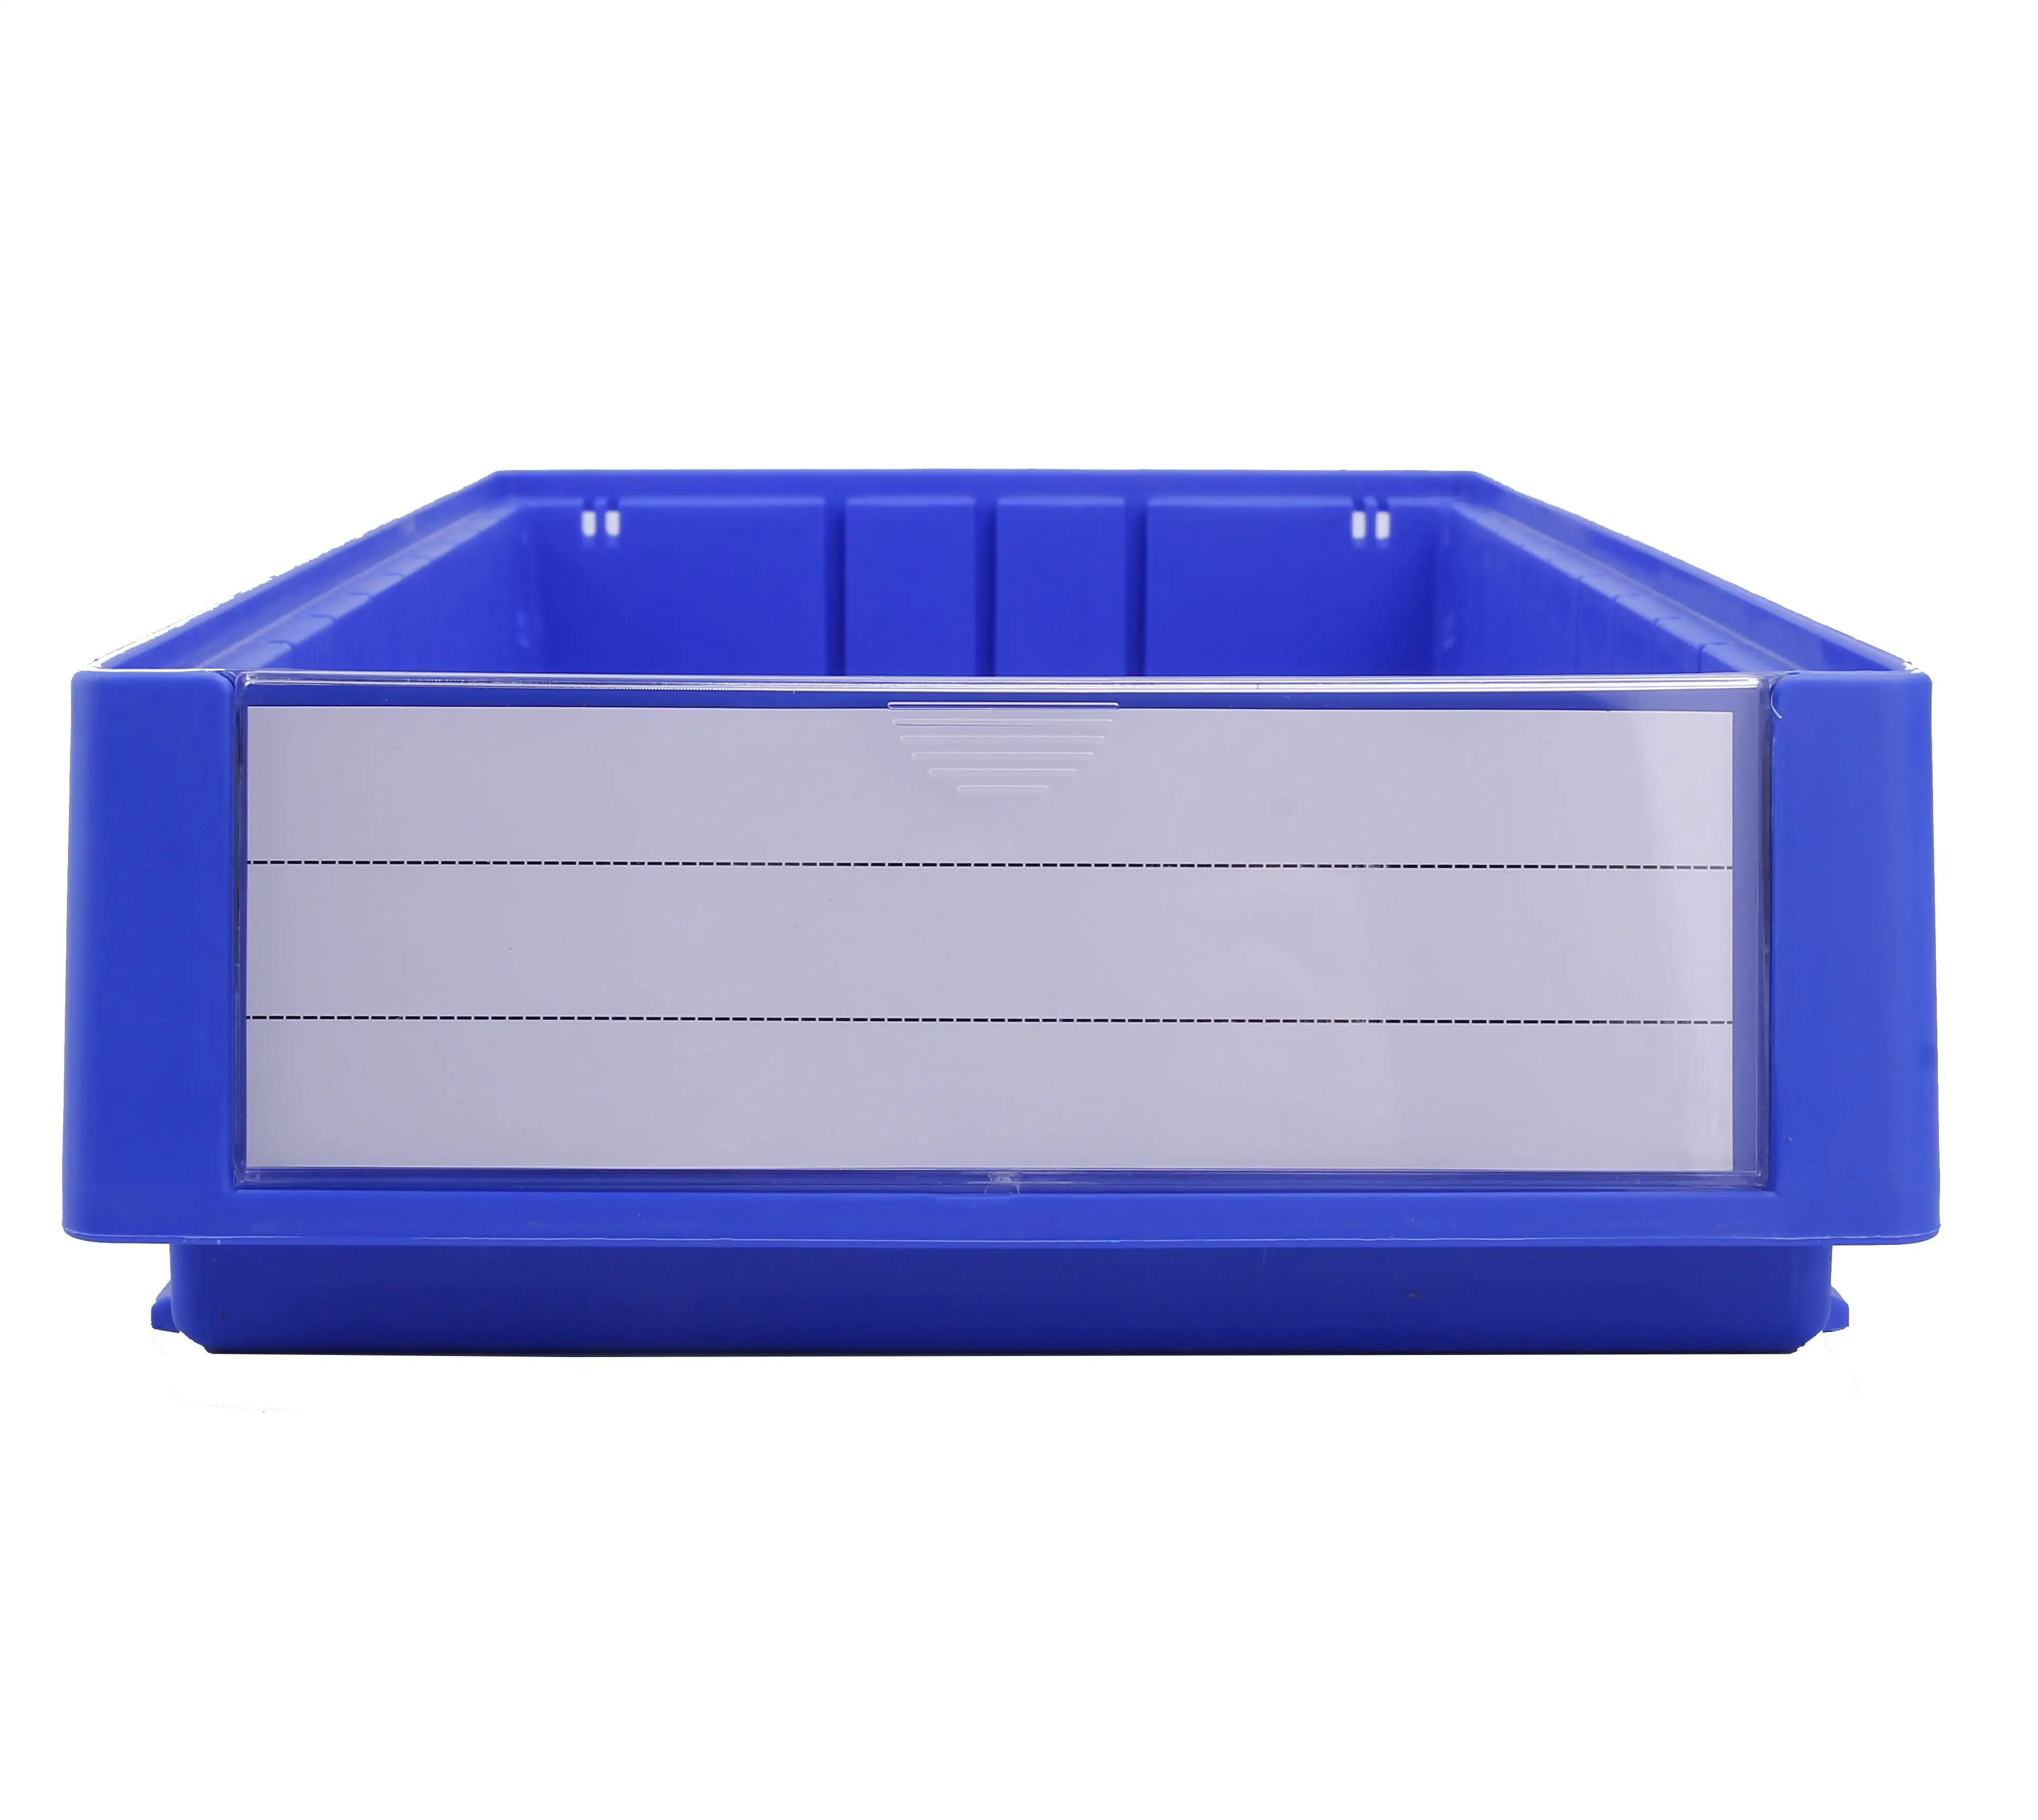 Vendita calda pezzi di ricambio contenitore di plastica organizer pp box con divisore eco-friendly impilabile scatola di plastica